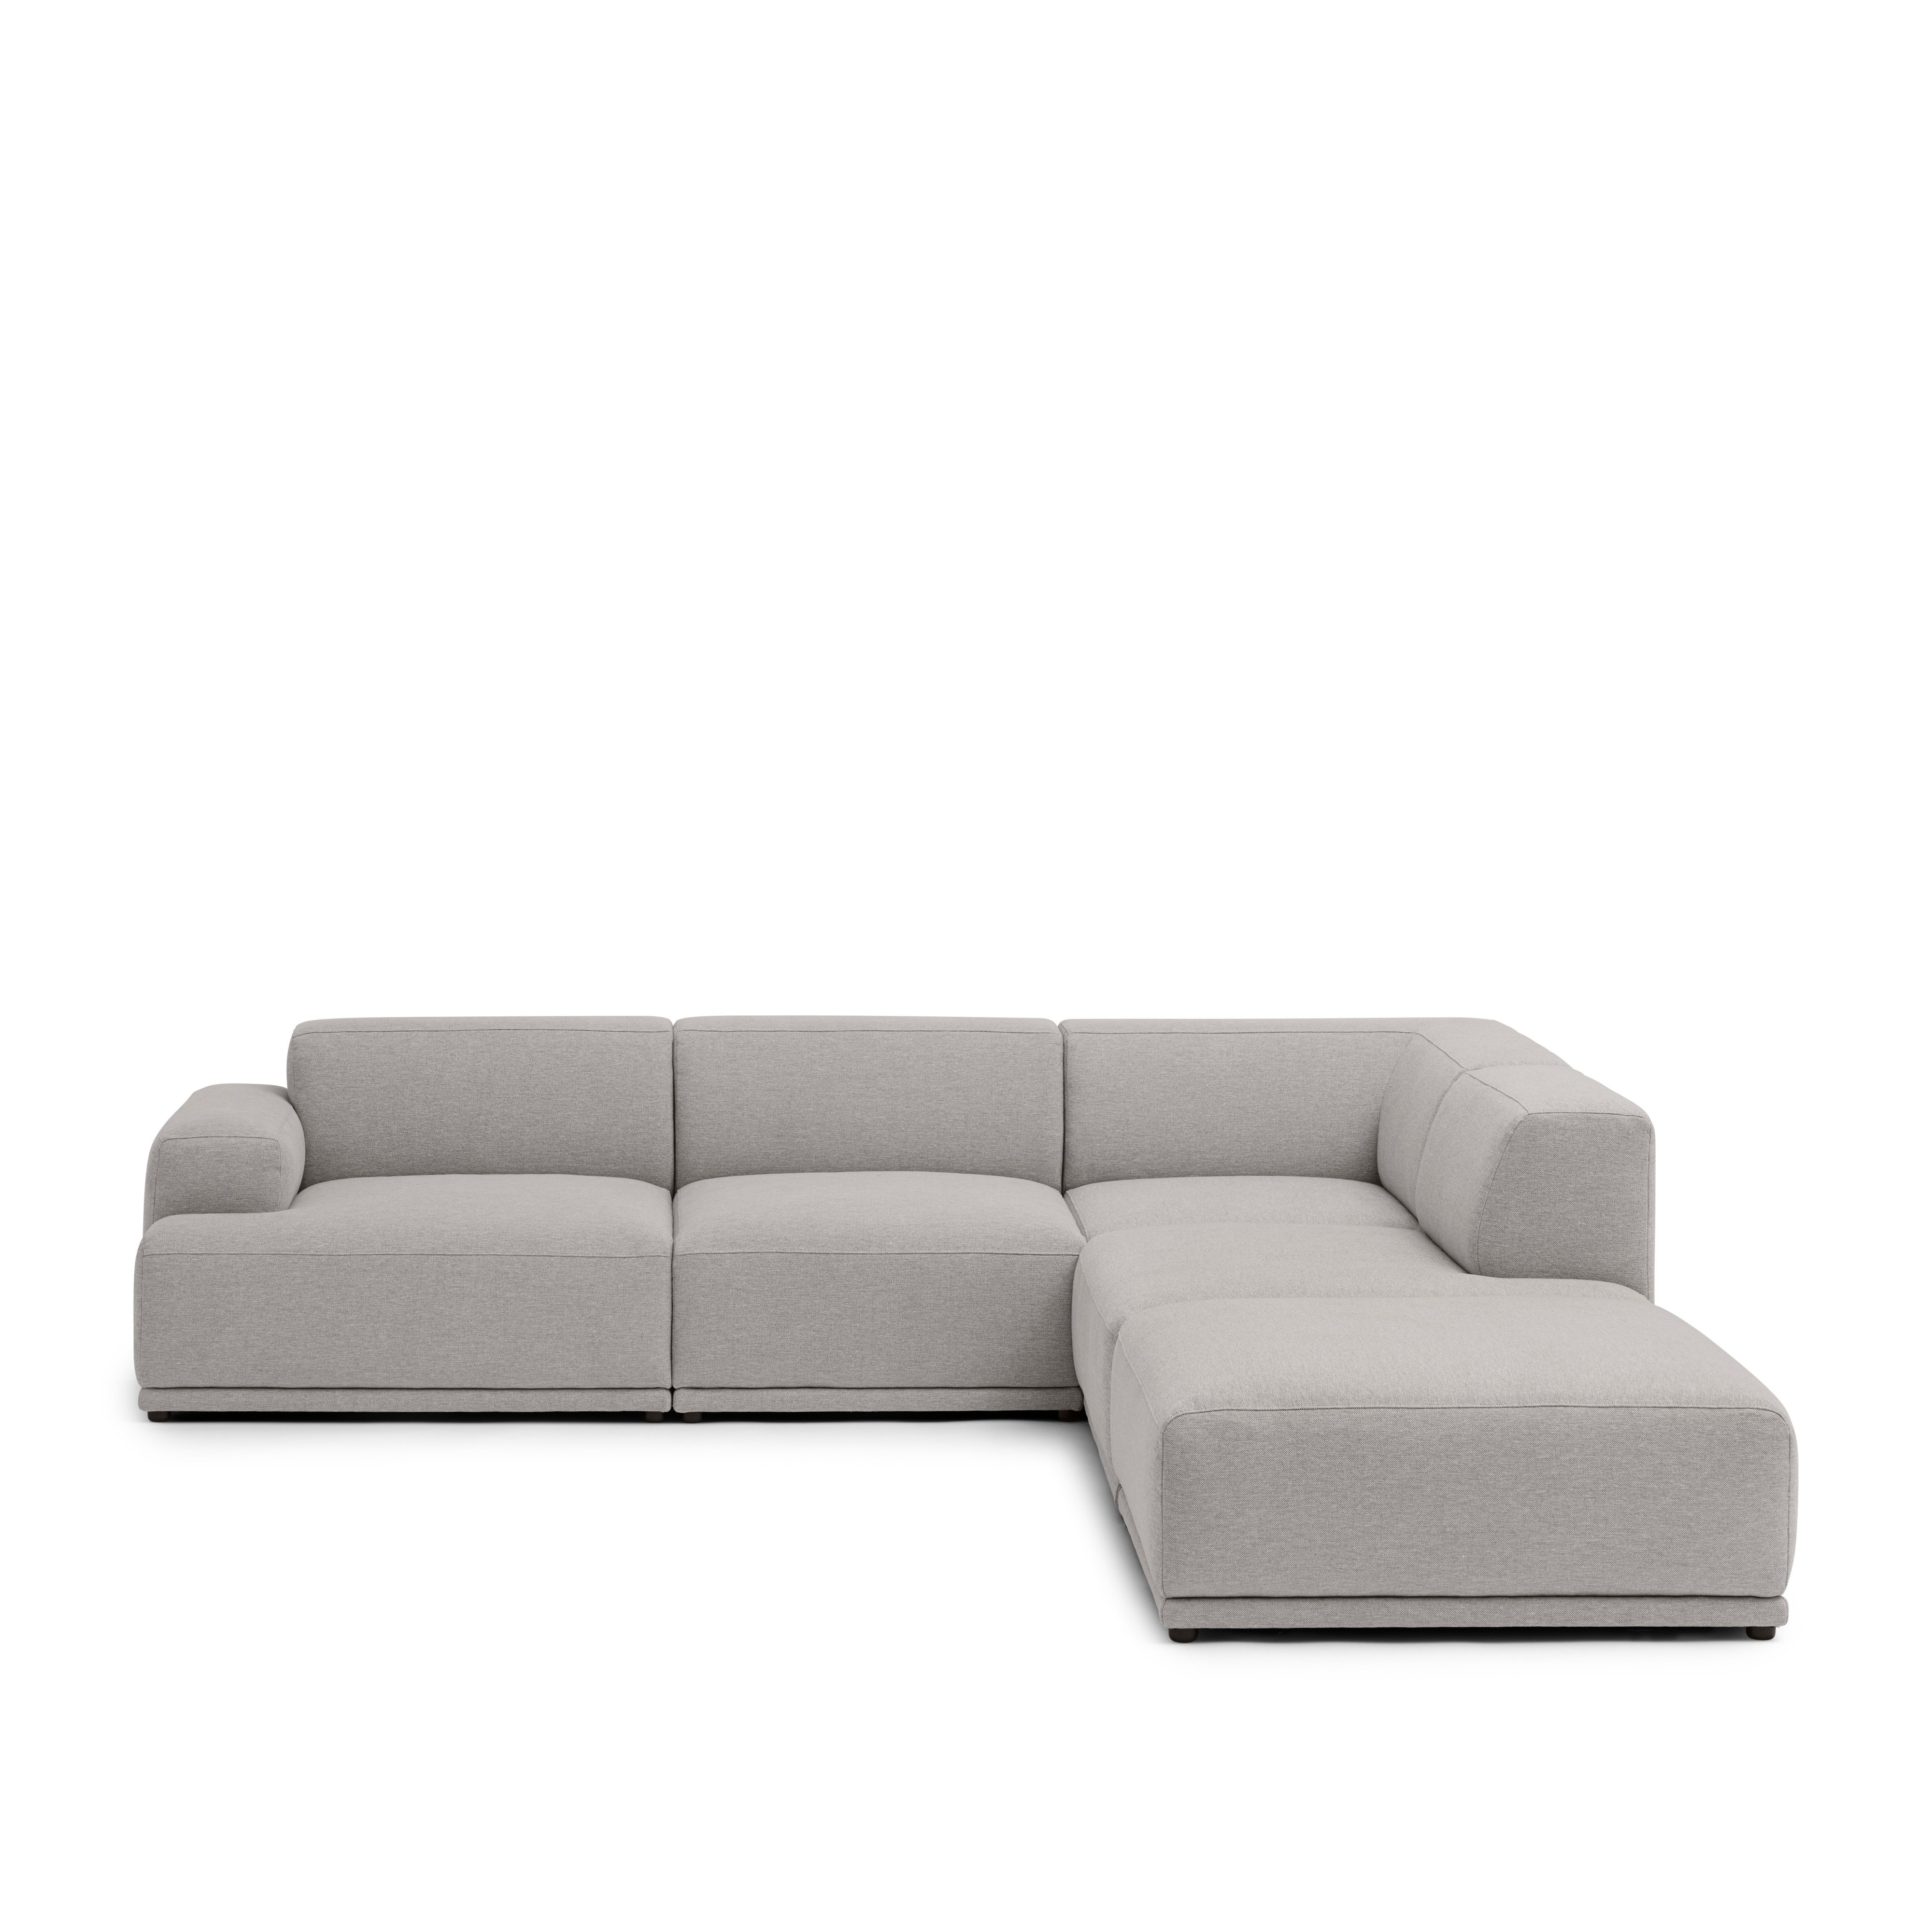 Connect Soft Modular Sofa A Deep Comfort